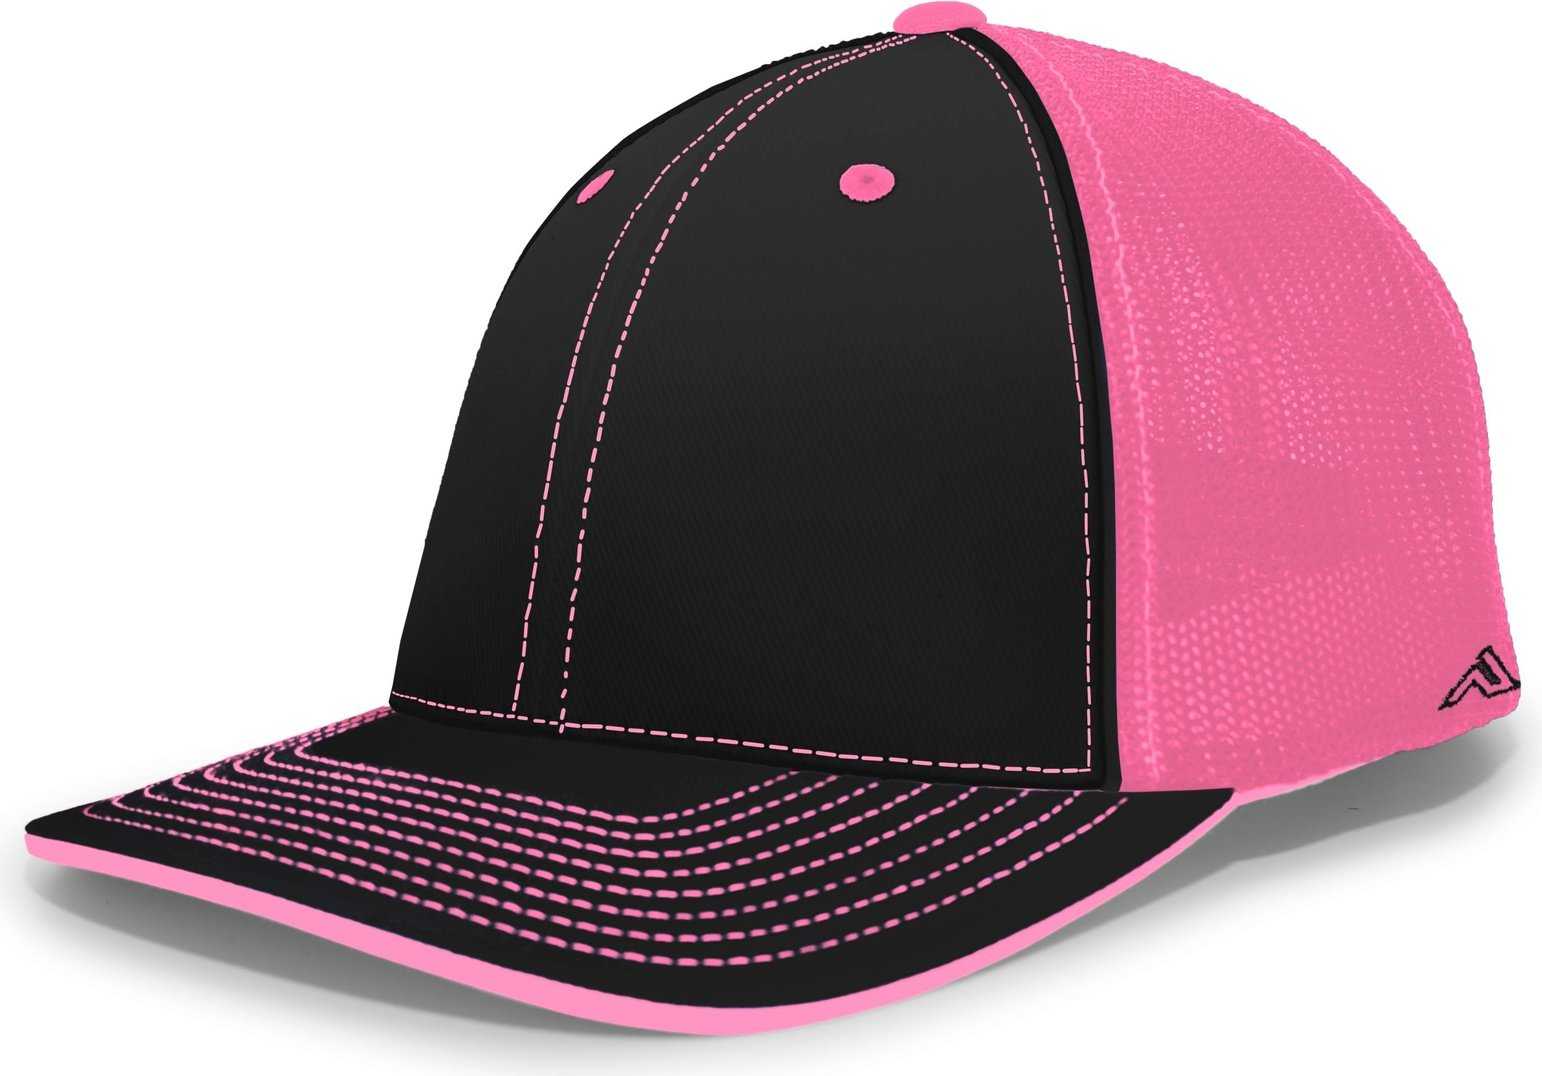 Pacific Headwear 404M Trucker Flexfit Cap - Black Pink - HIT a Double